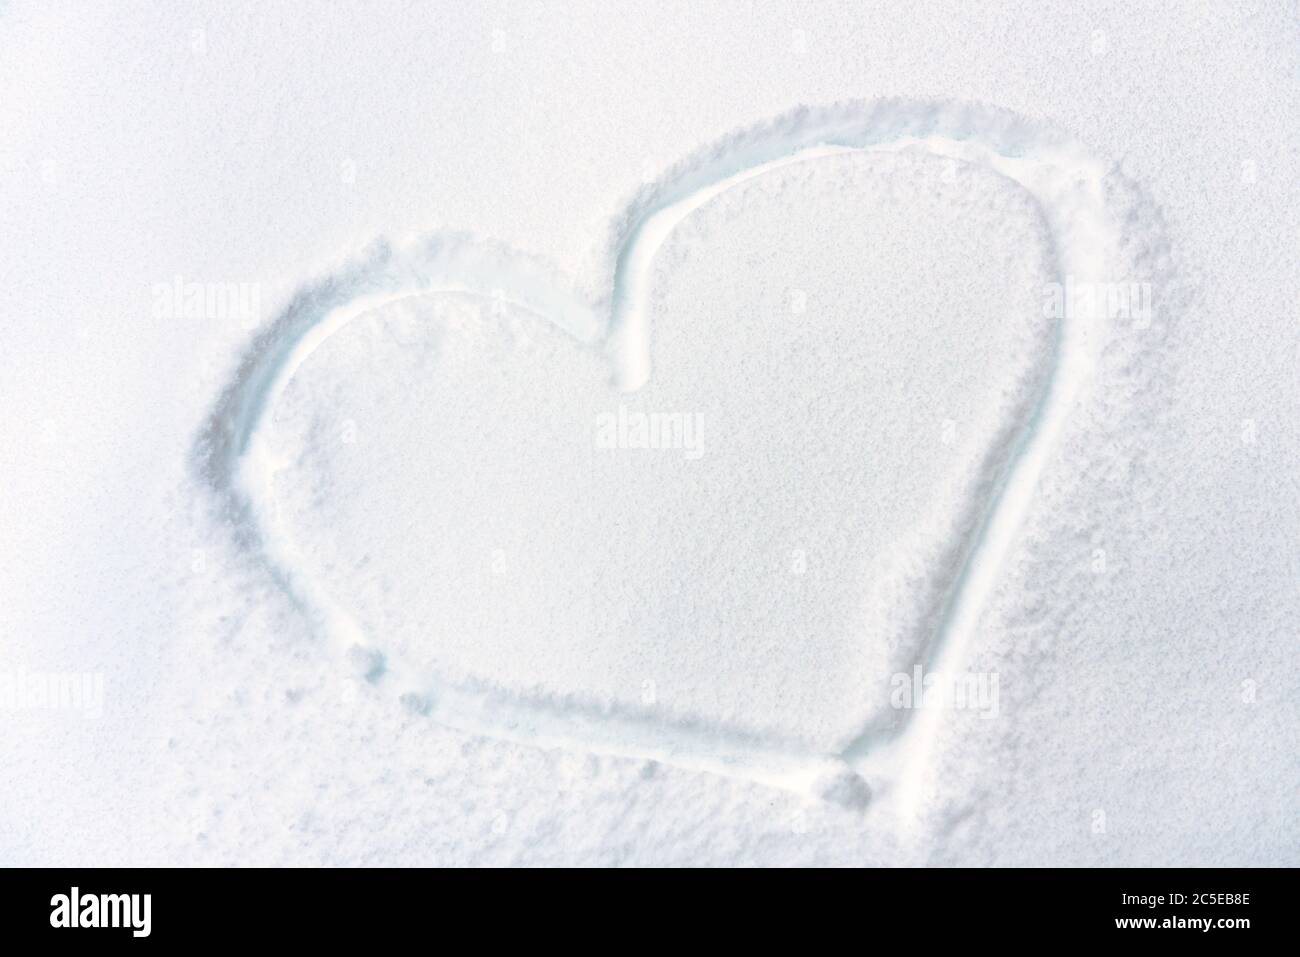 Herz auf frischer Schnee Textur gezeichnet. Symbol des Herzens auf verschneite Oberfläche Nahaufnahme. Konzept der Liebe, Romantik und Winterurlaub. Herzform auf weißem reinem BA Stockfoto